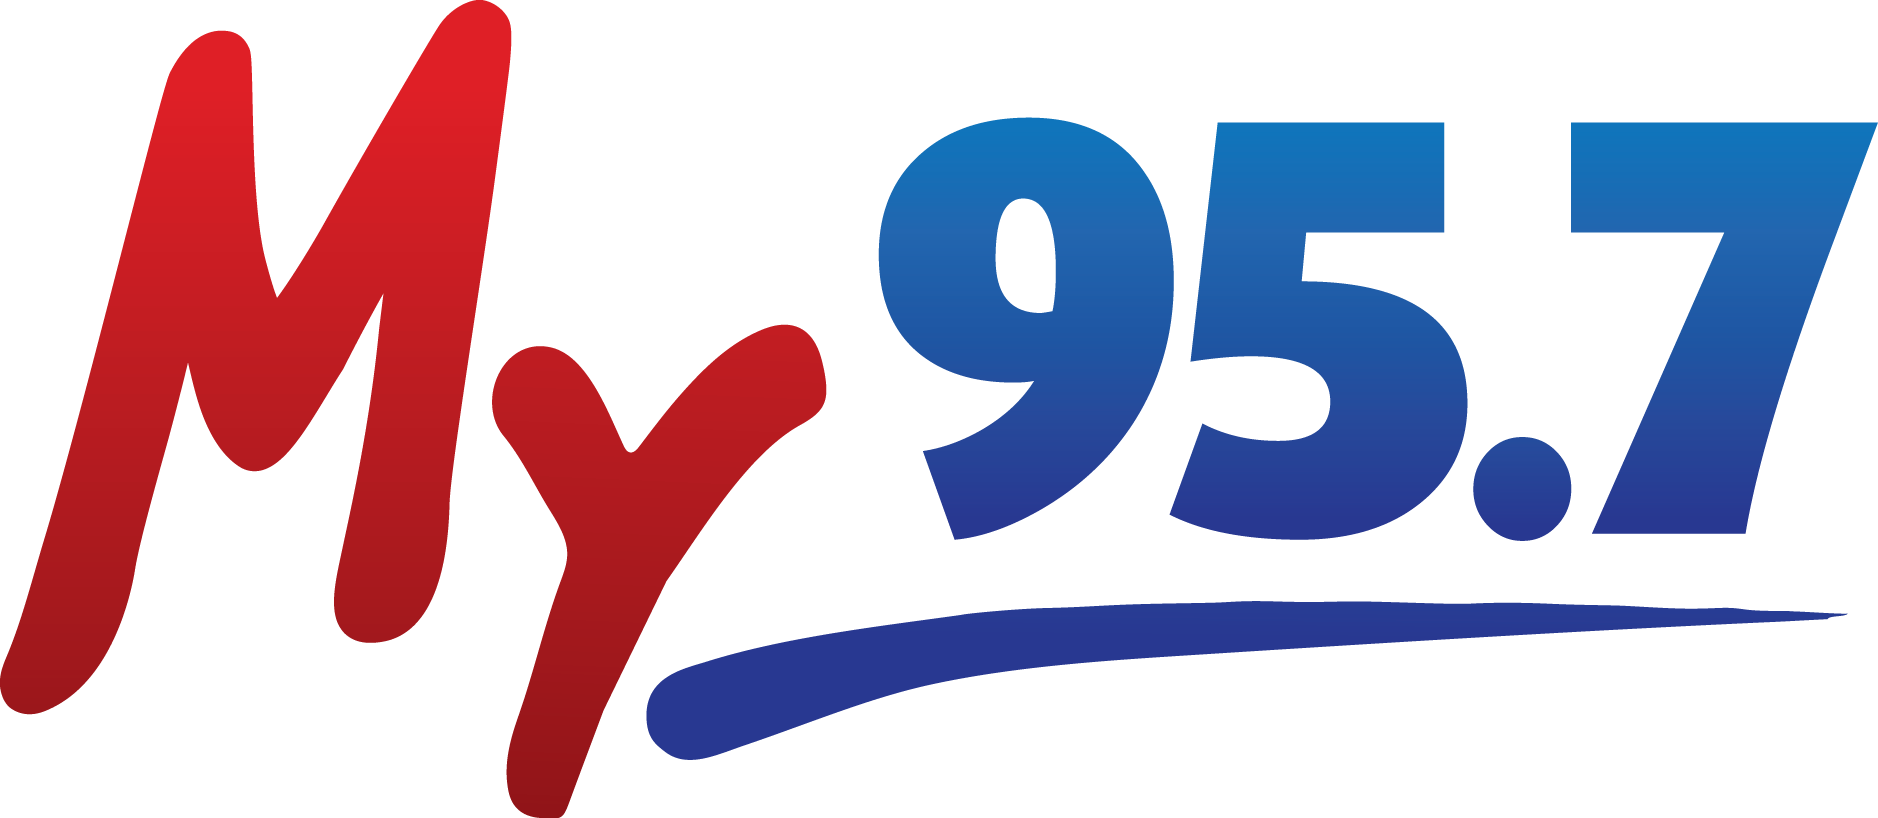 FM 95.7 - KDAL FM